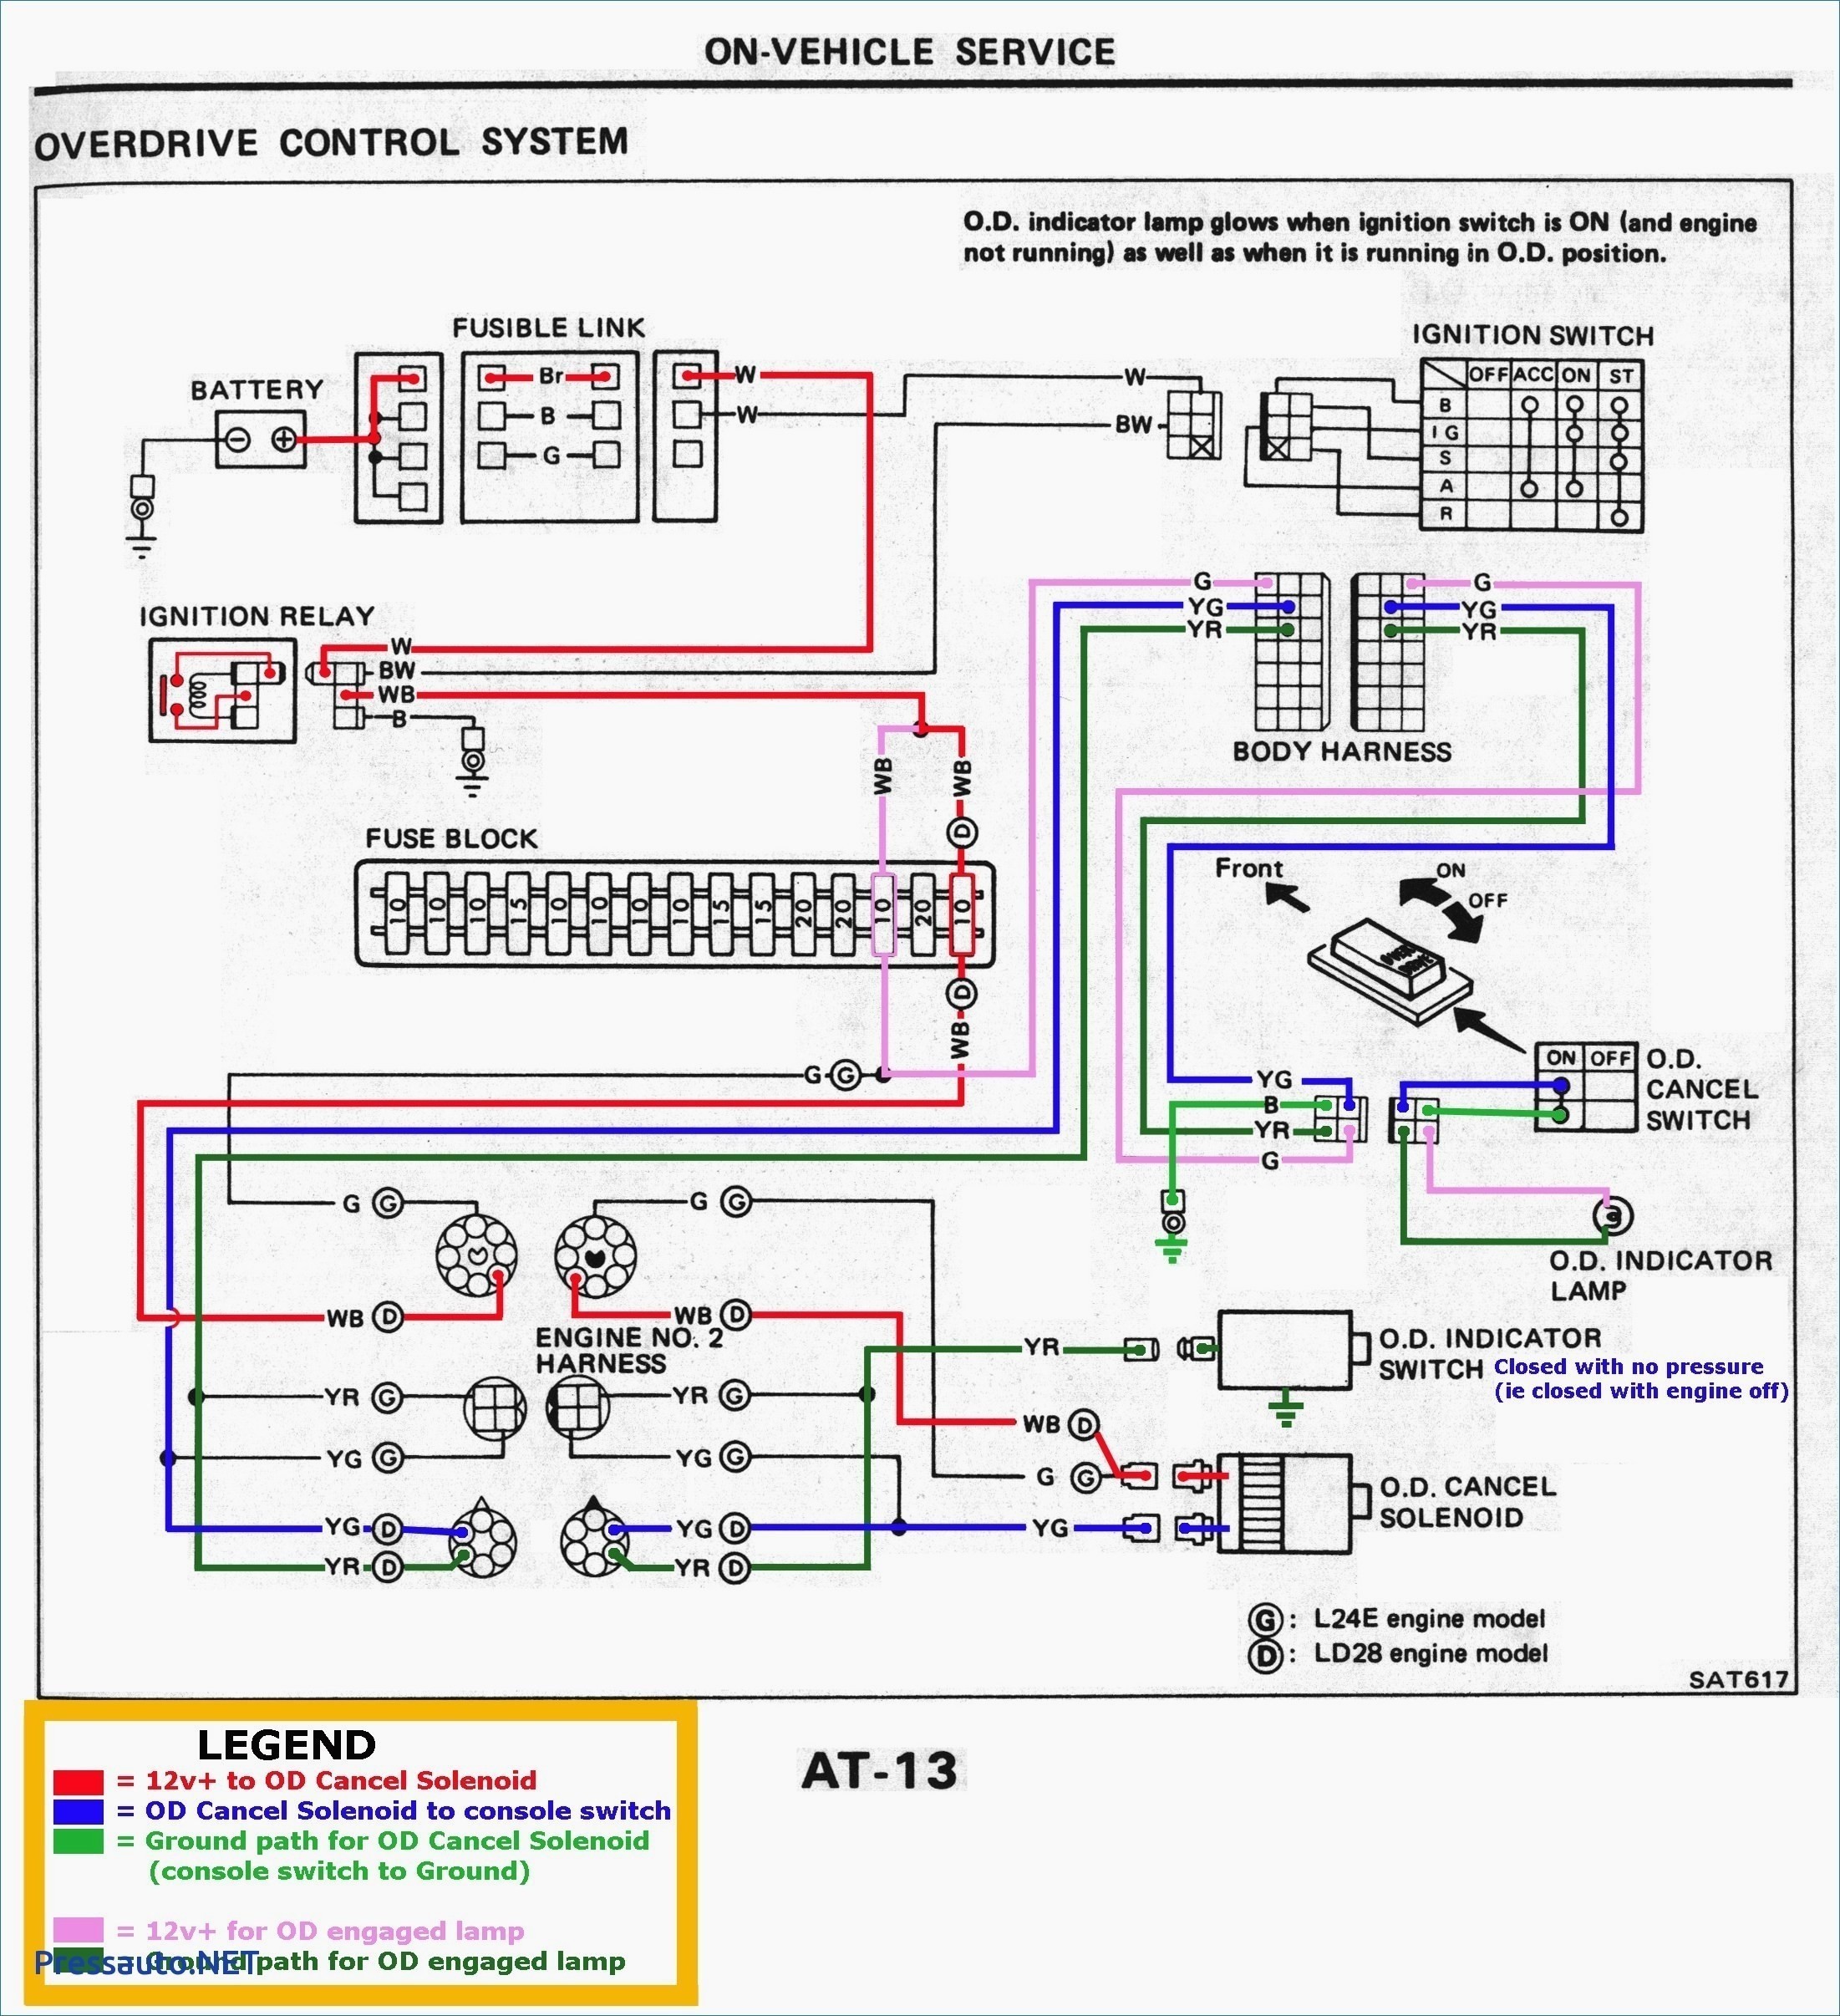 2010 Mazda 3 Wiring Diagram 2013 Mazda 3 Engine Diagram Wiring Diagram Instruct Of 2010 Mazda 3 Wiring Diagram